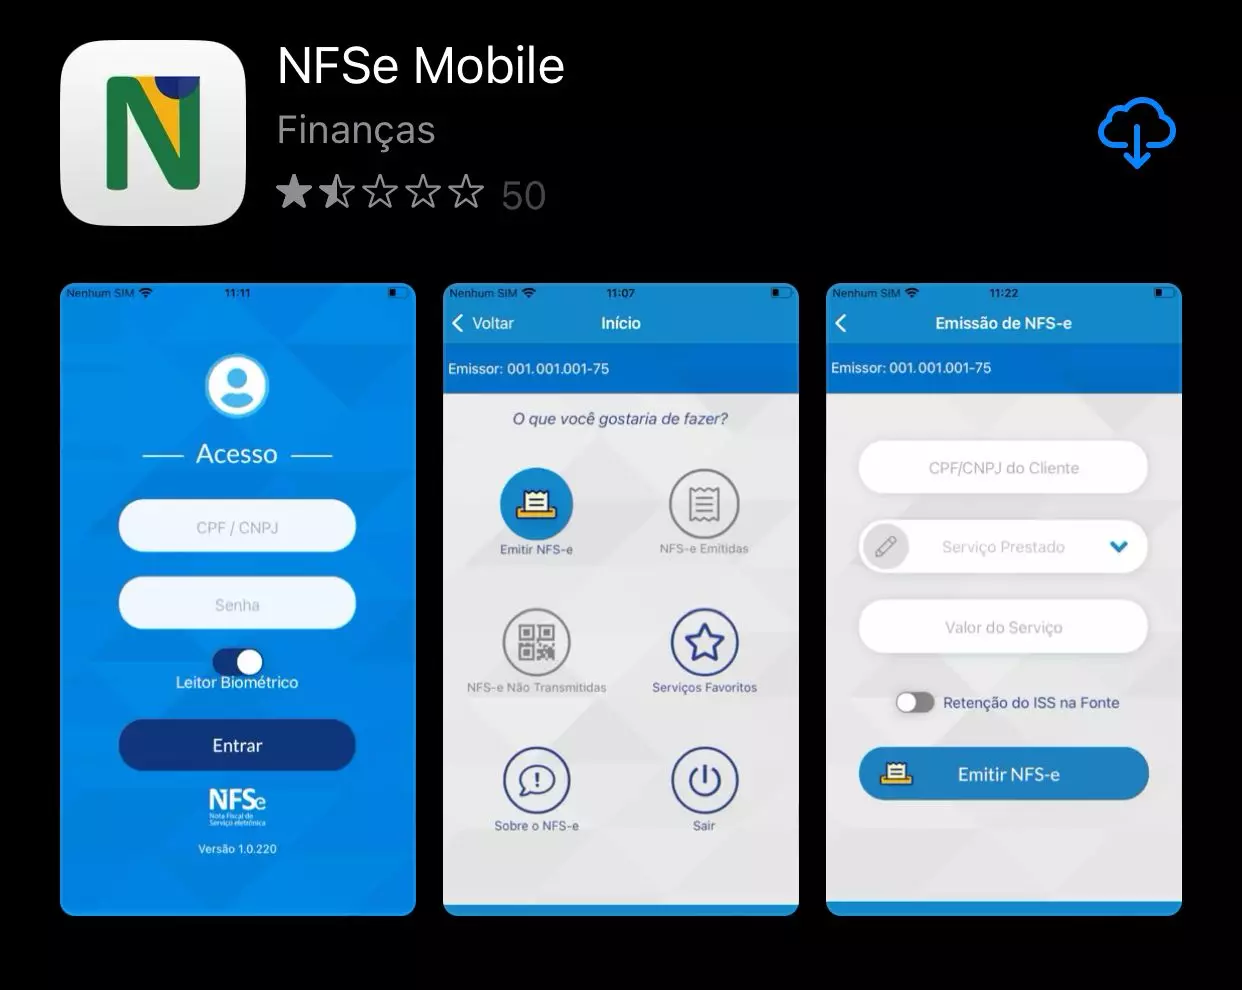 Novo app da Receita Federal: veja os serviços e como baixar